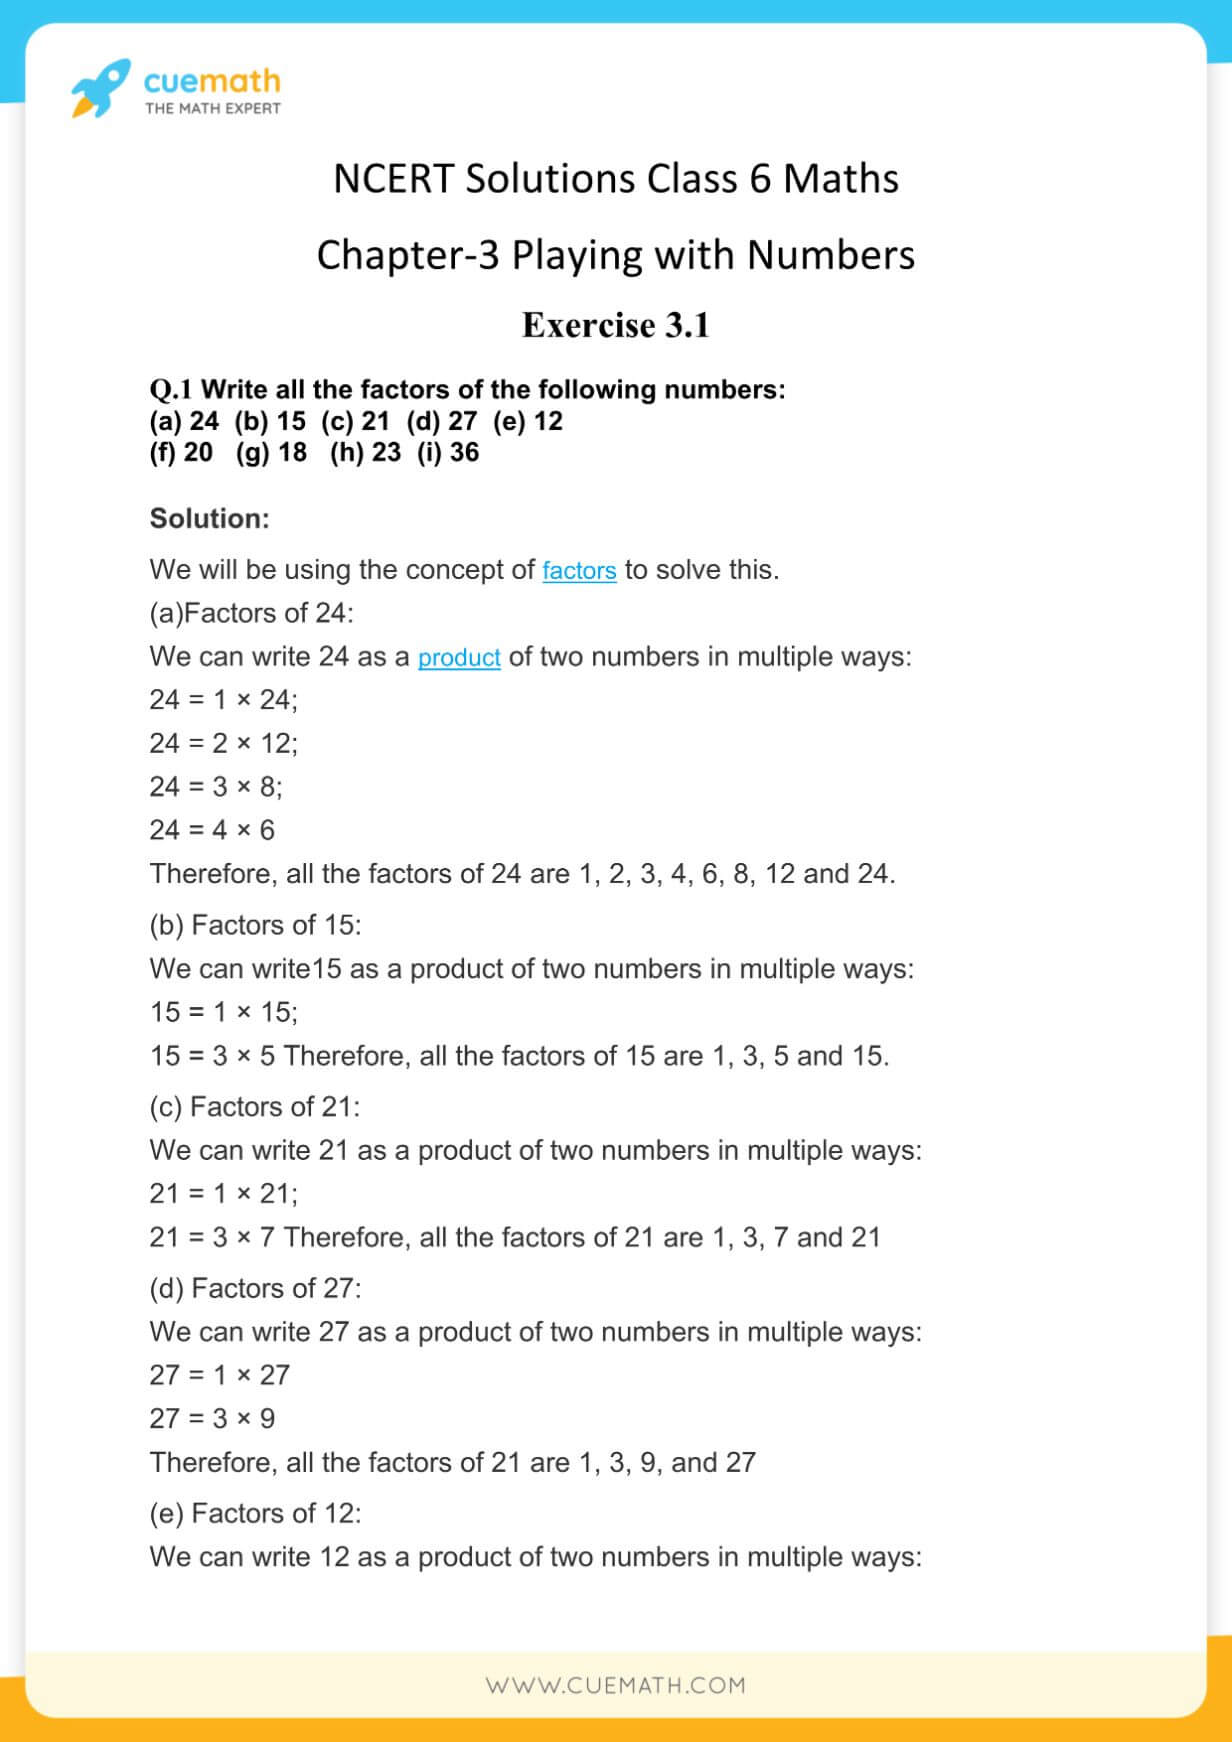 NCERT Solutions Class 6 Maths Chapter 3